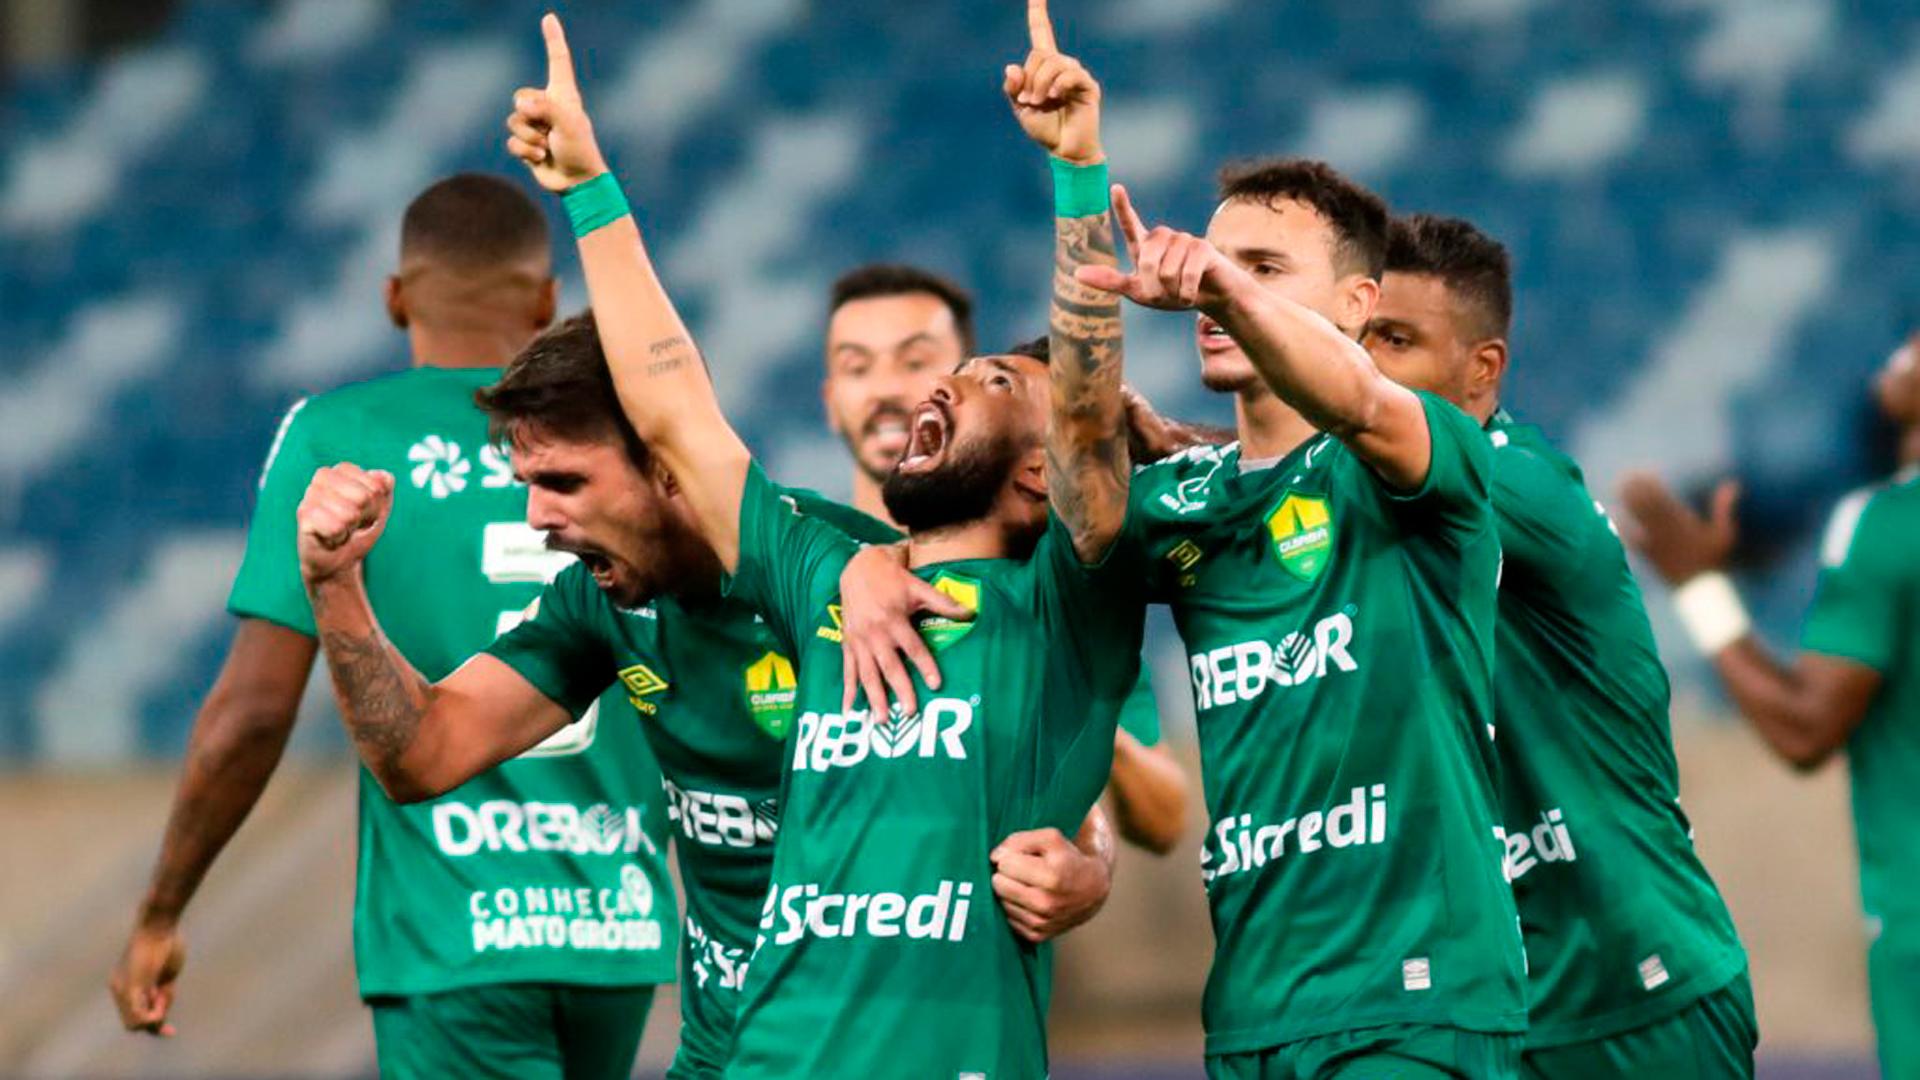 Cuiabá é o único clube da Série A a não ter um patrocínio de casa de apostas